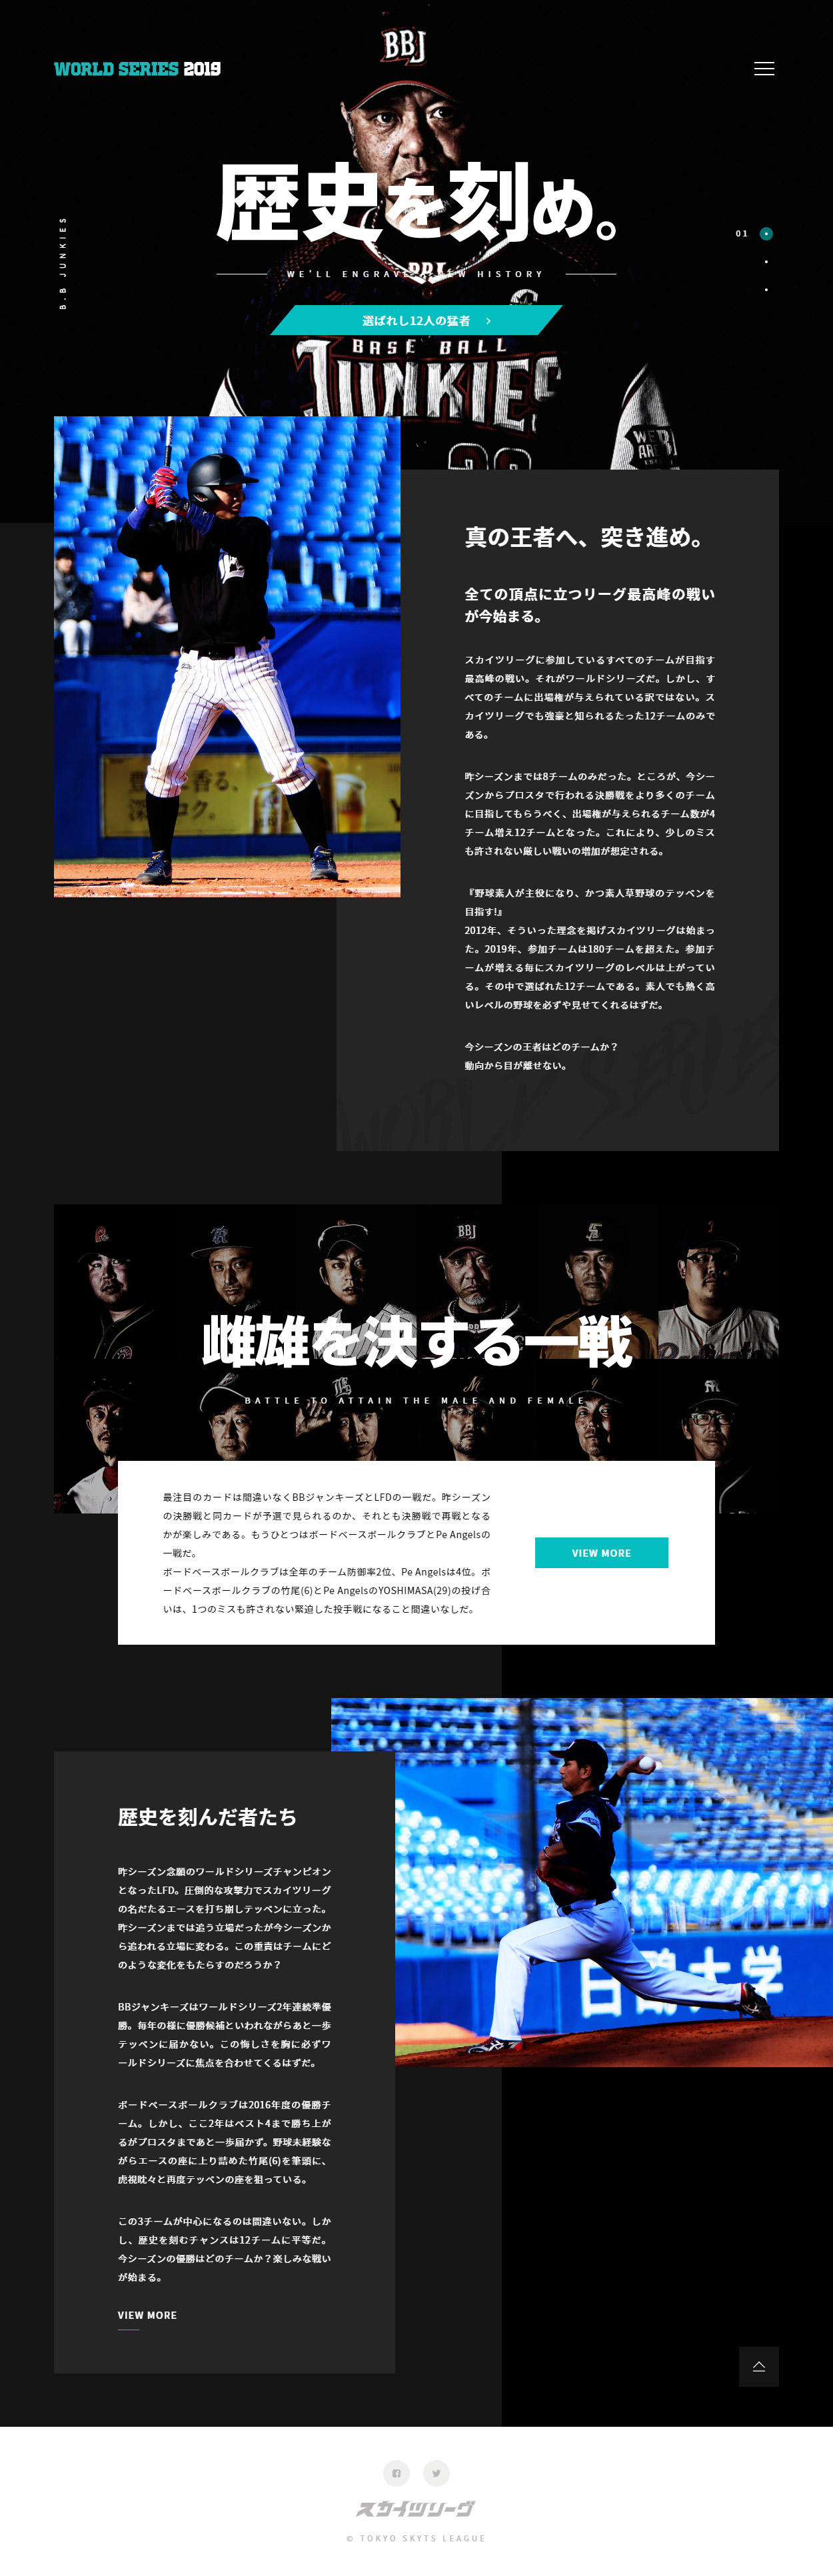 草野球ワールドシリーズ19 Sankou Webデザインギャラリー 参考サイト集